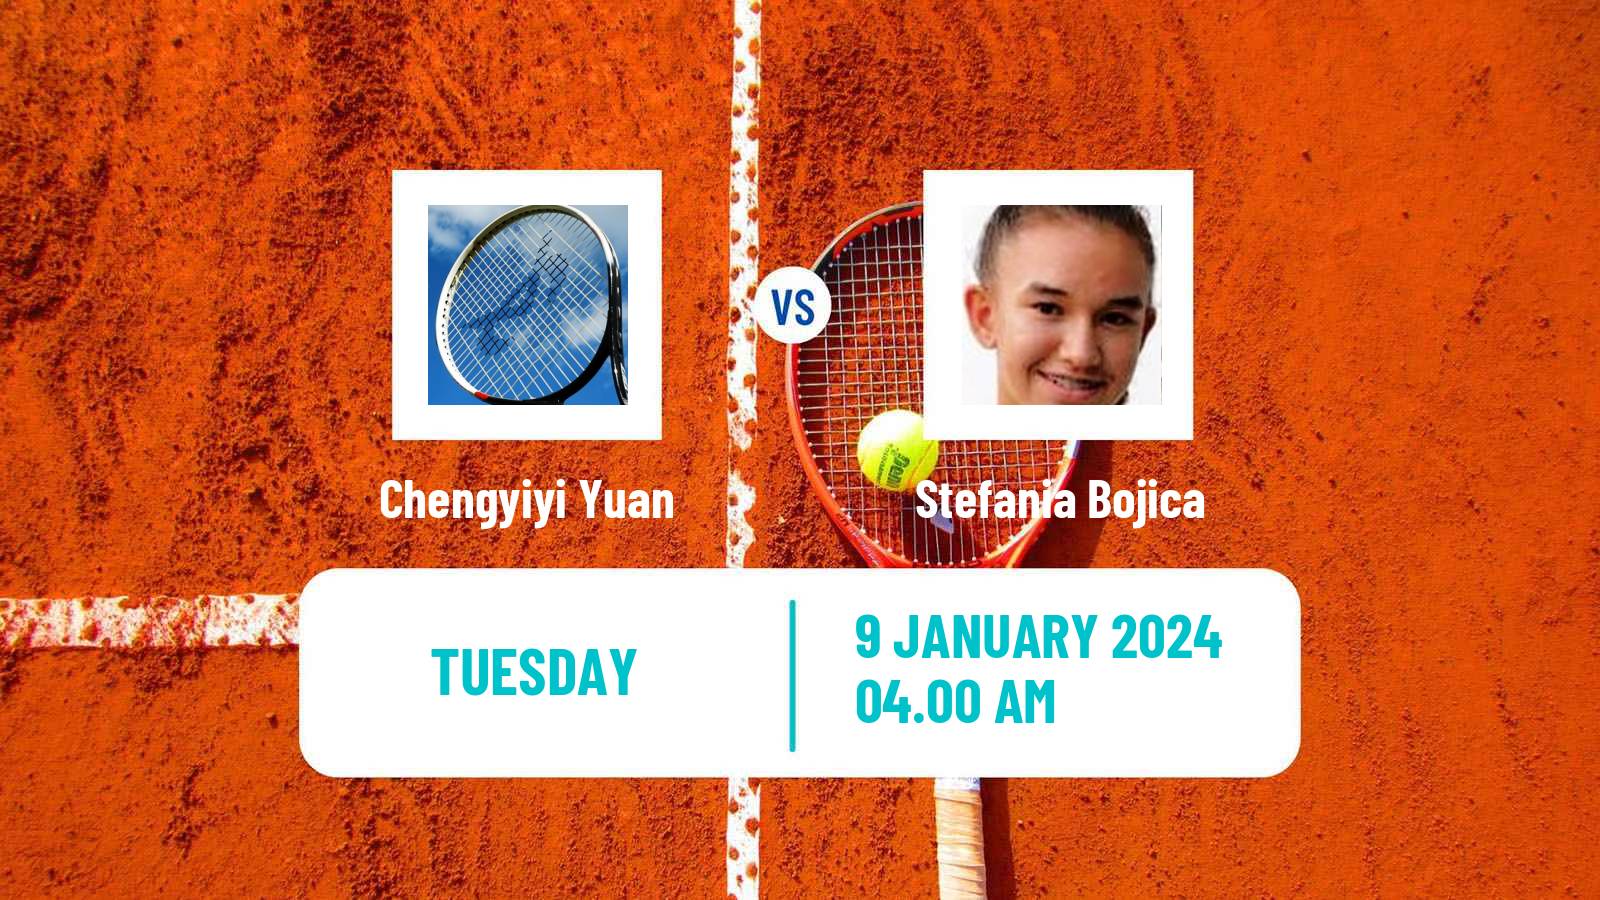 Tennis ITF W15 Monastir 51 Women Chengyiyi Yuan - Stefania Bojica